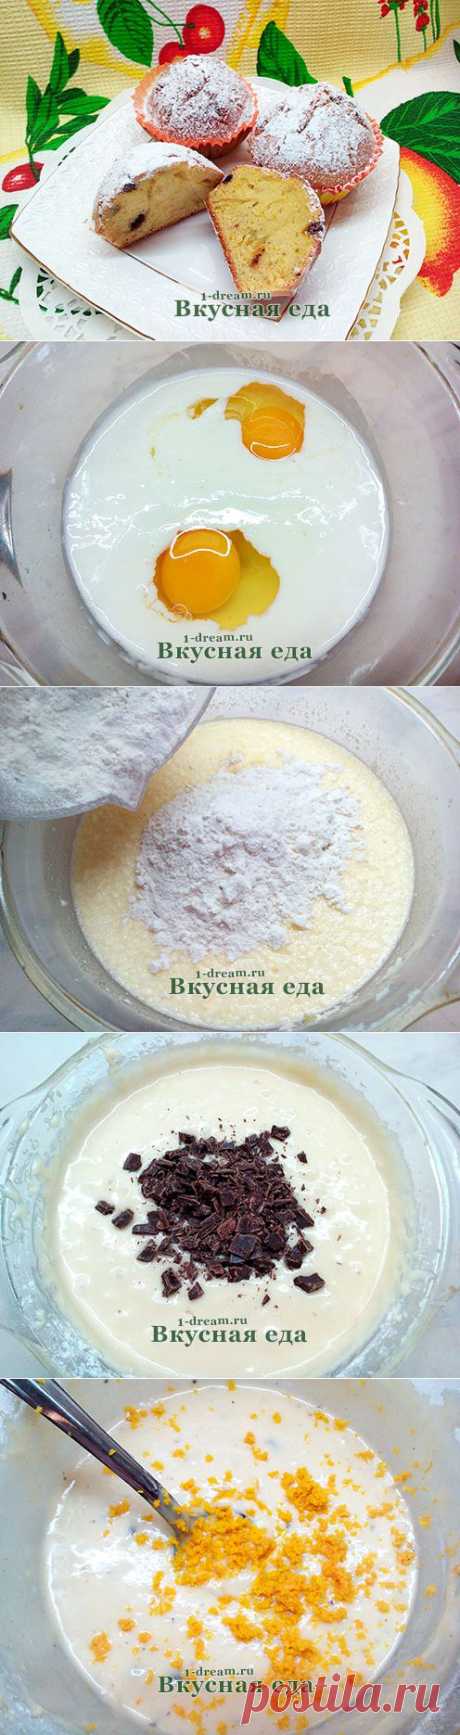 Кекс на кефире-рецепт с фото - Вкусная еда